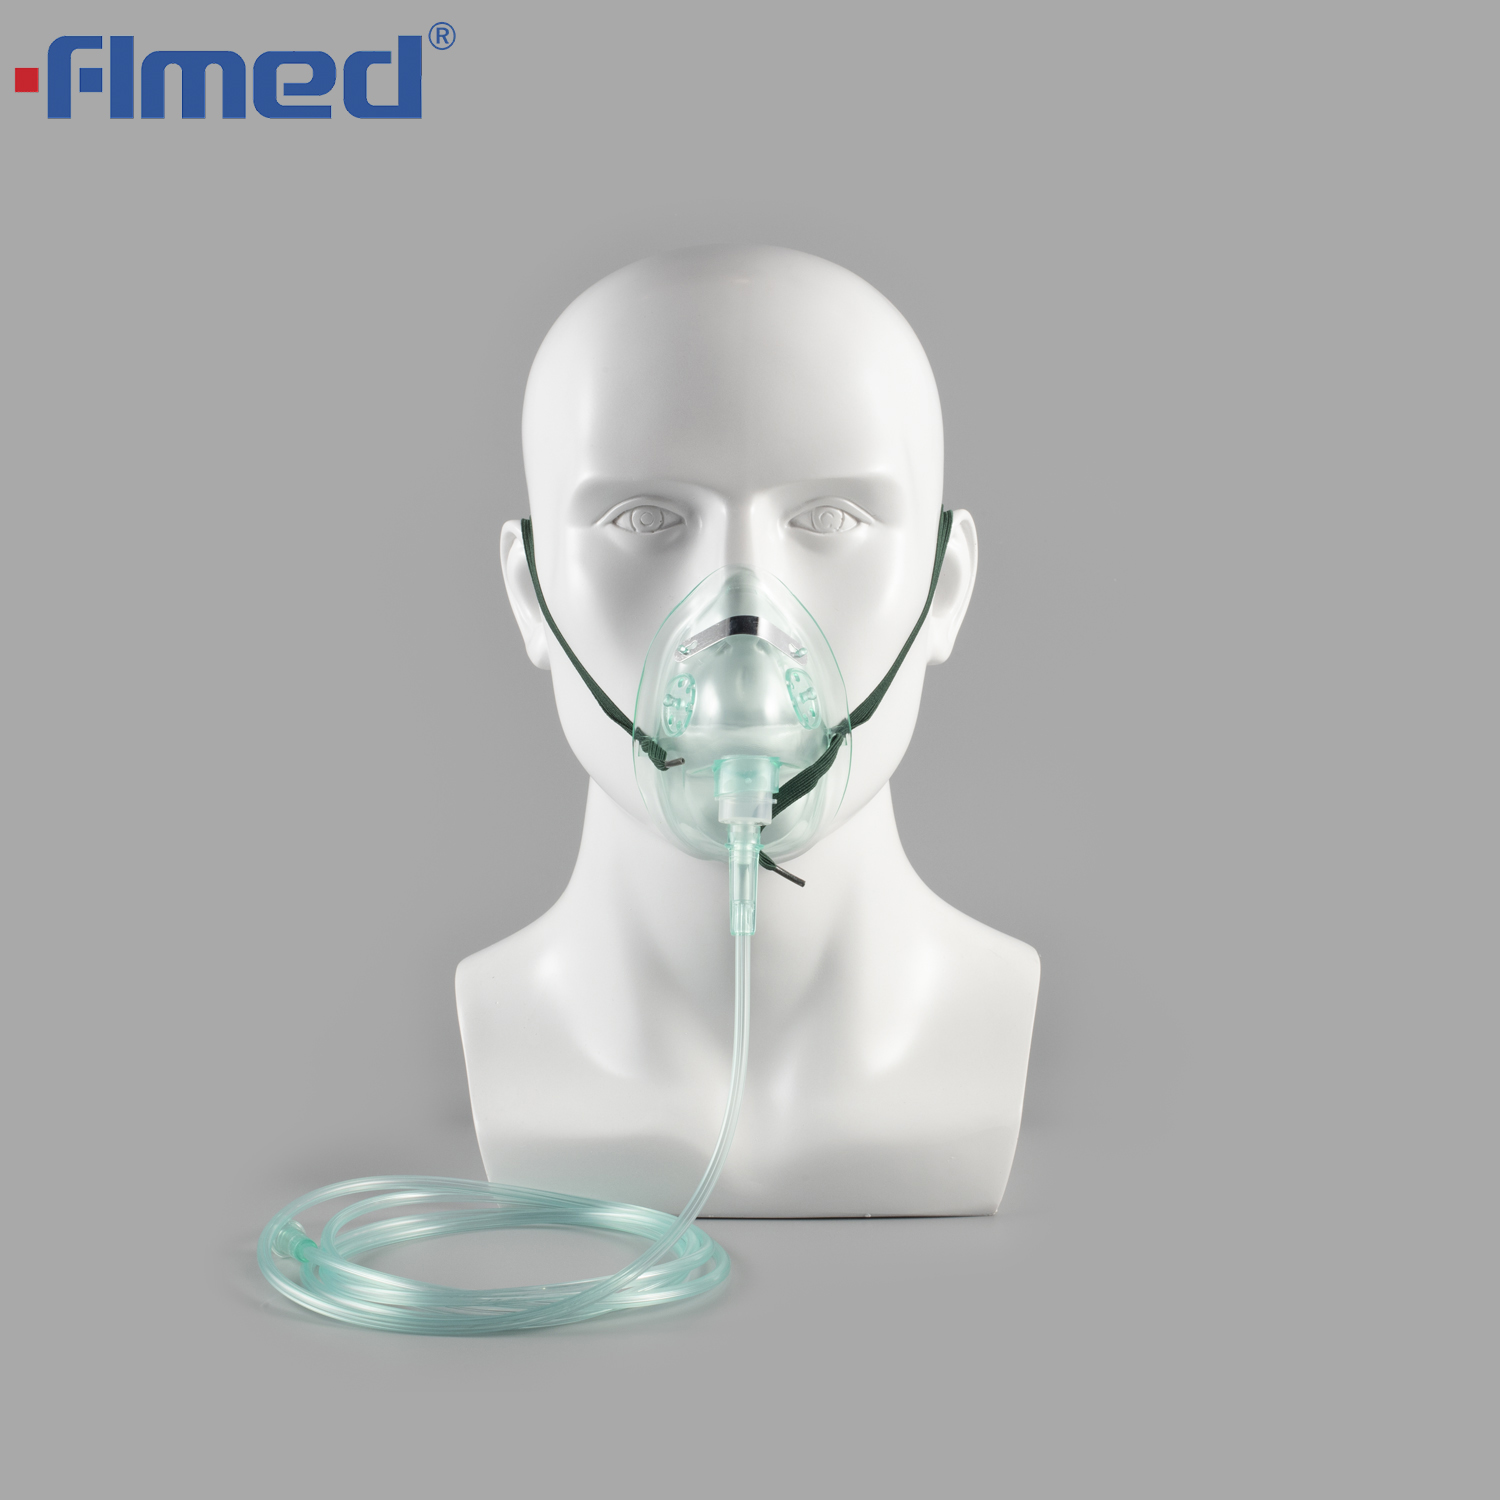 Máscaras de oxigênio descartáveis ​​pediátricas com tubulação